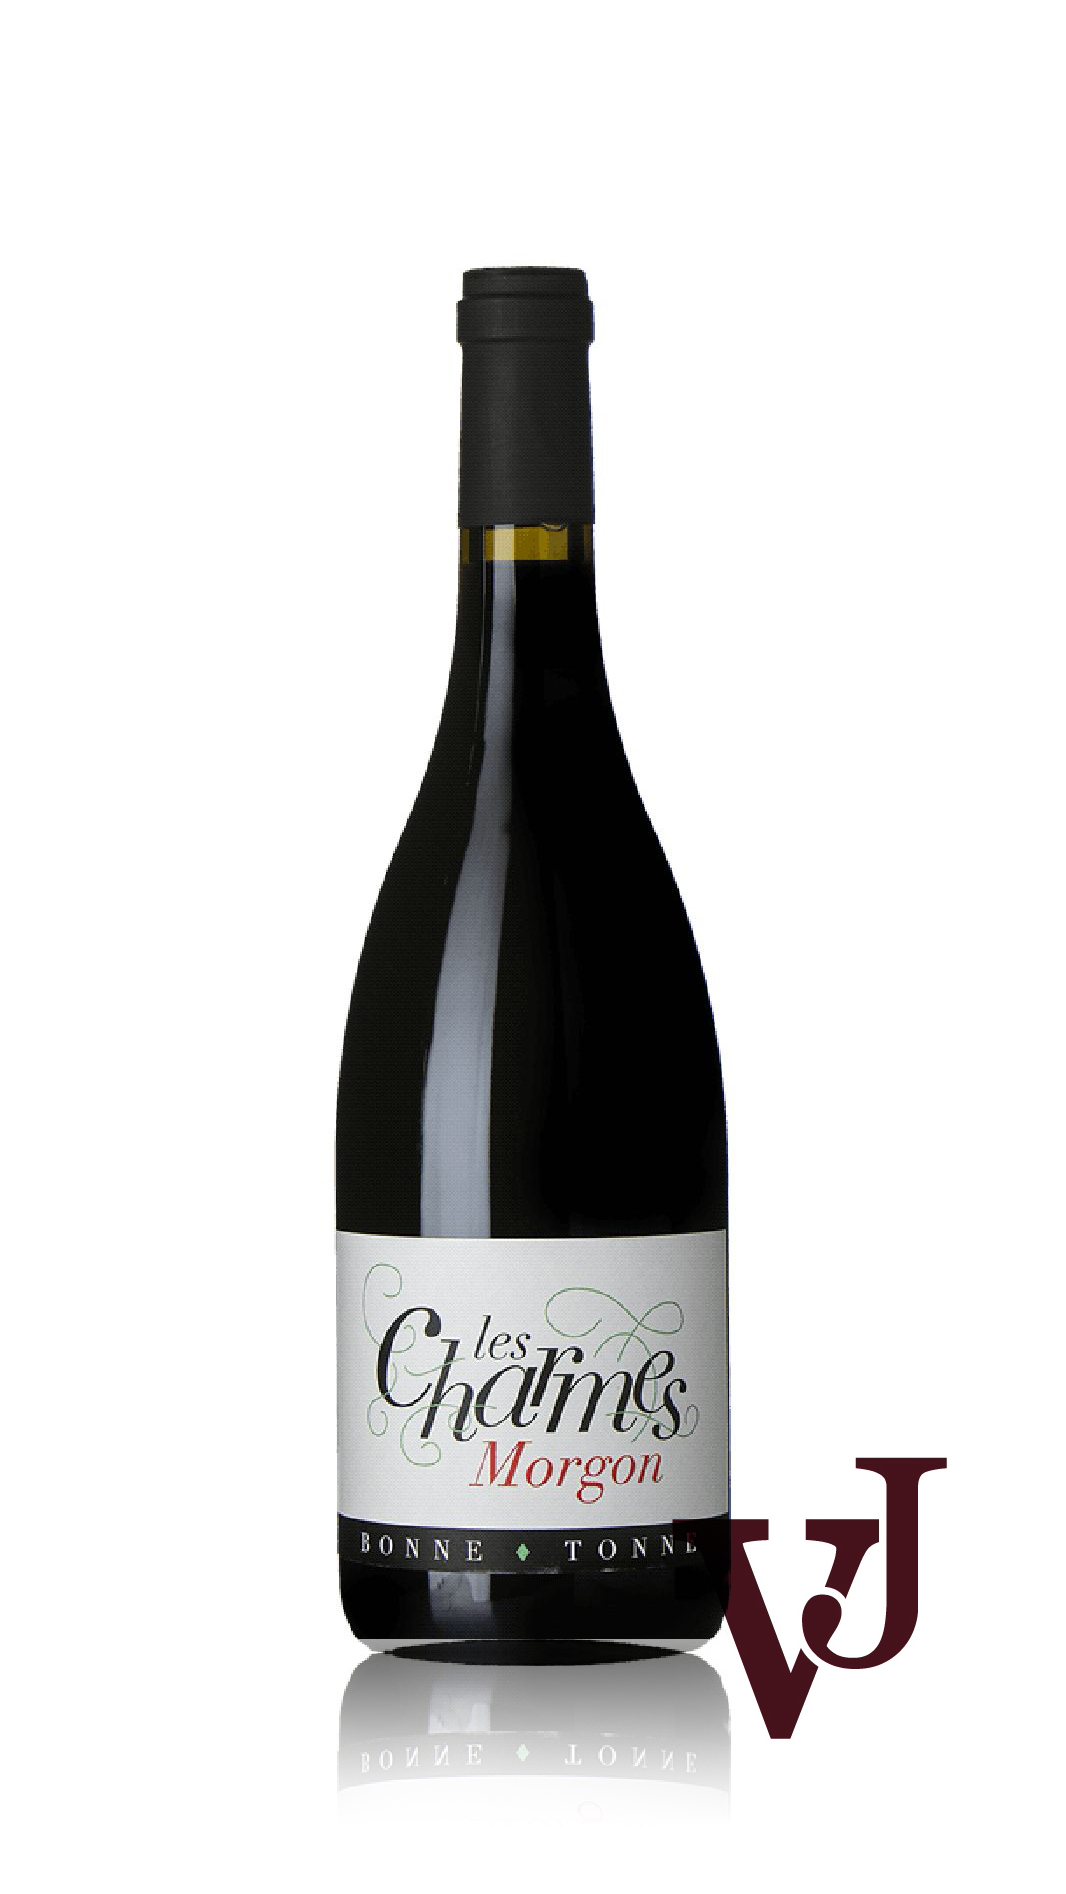 Rött Vin - Morgon Les Charmes Domaine de la Bonne Tonne 2020 artikel nummer 9339601 från producenten Domaine de la Bonne Tonne från Frankrike